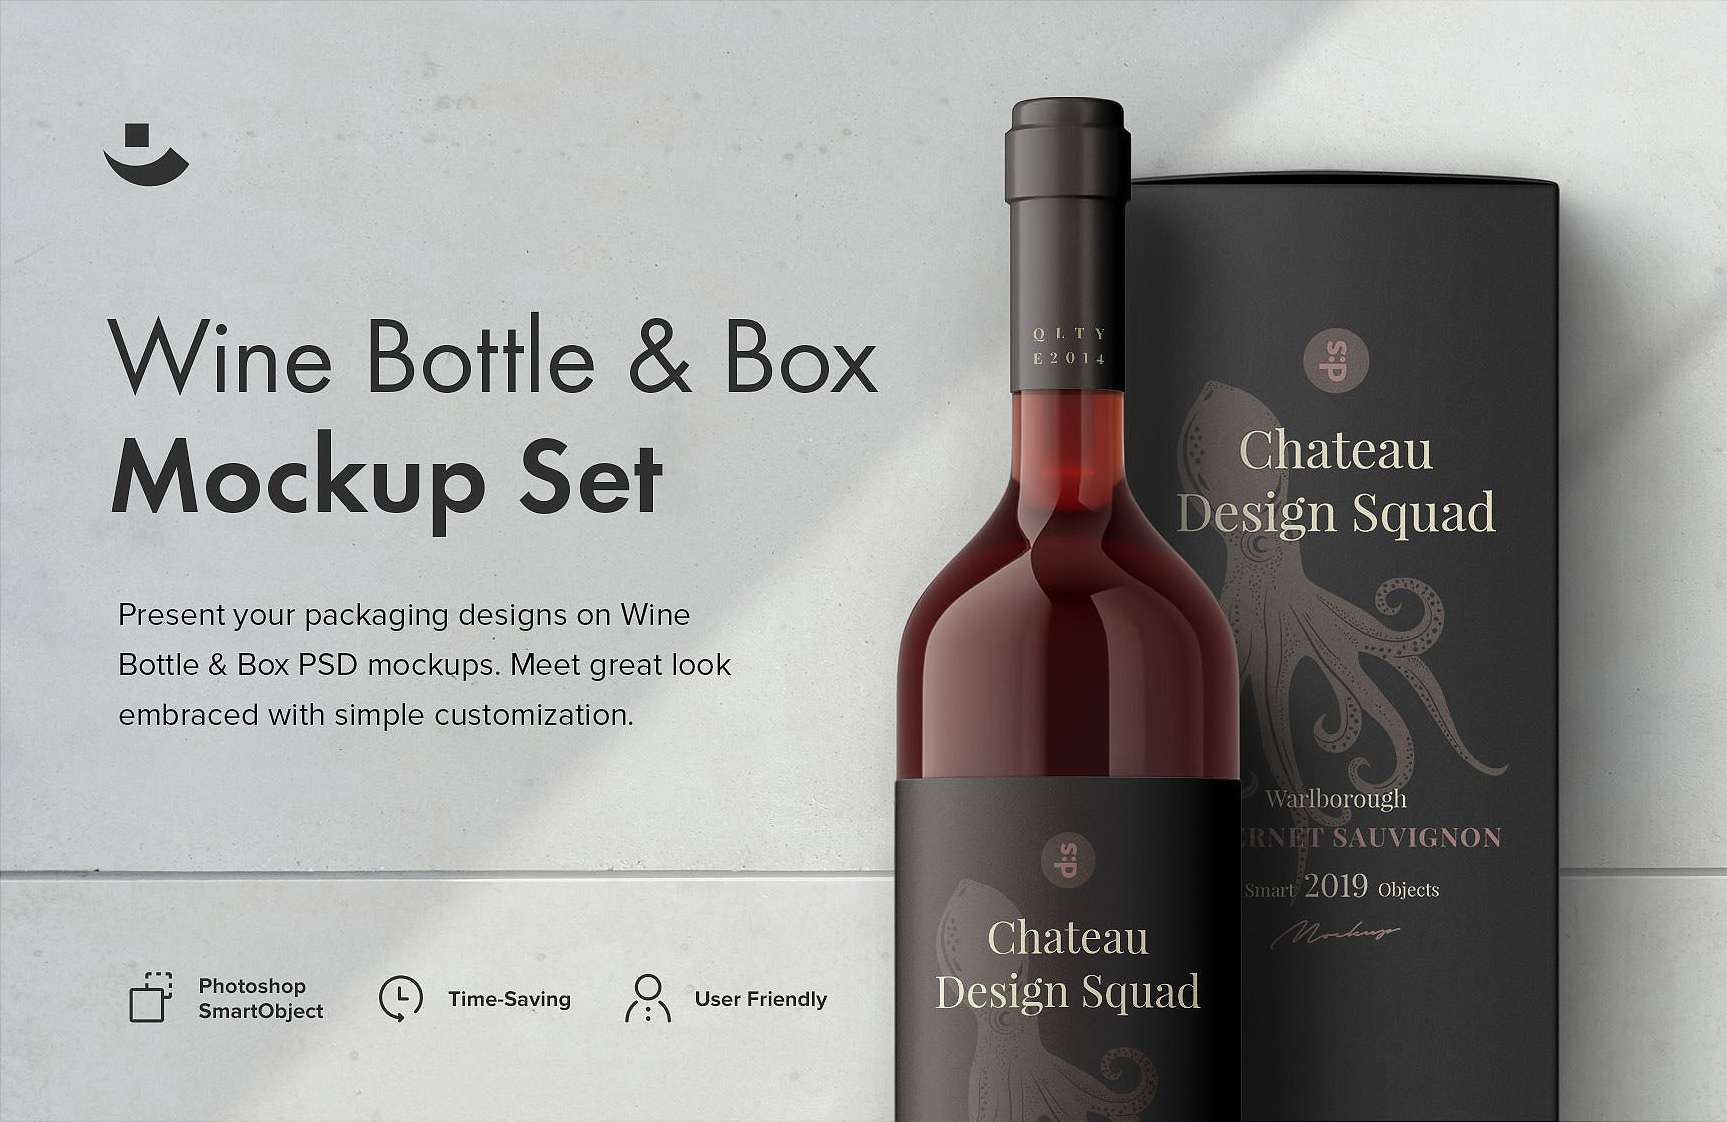 高档葡萄酒红酒包装瓶贴样机 Essential Wine Bottle Mockup Set插图